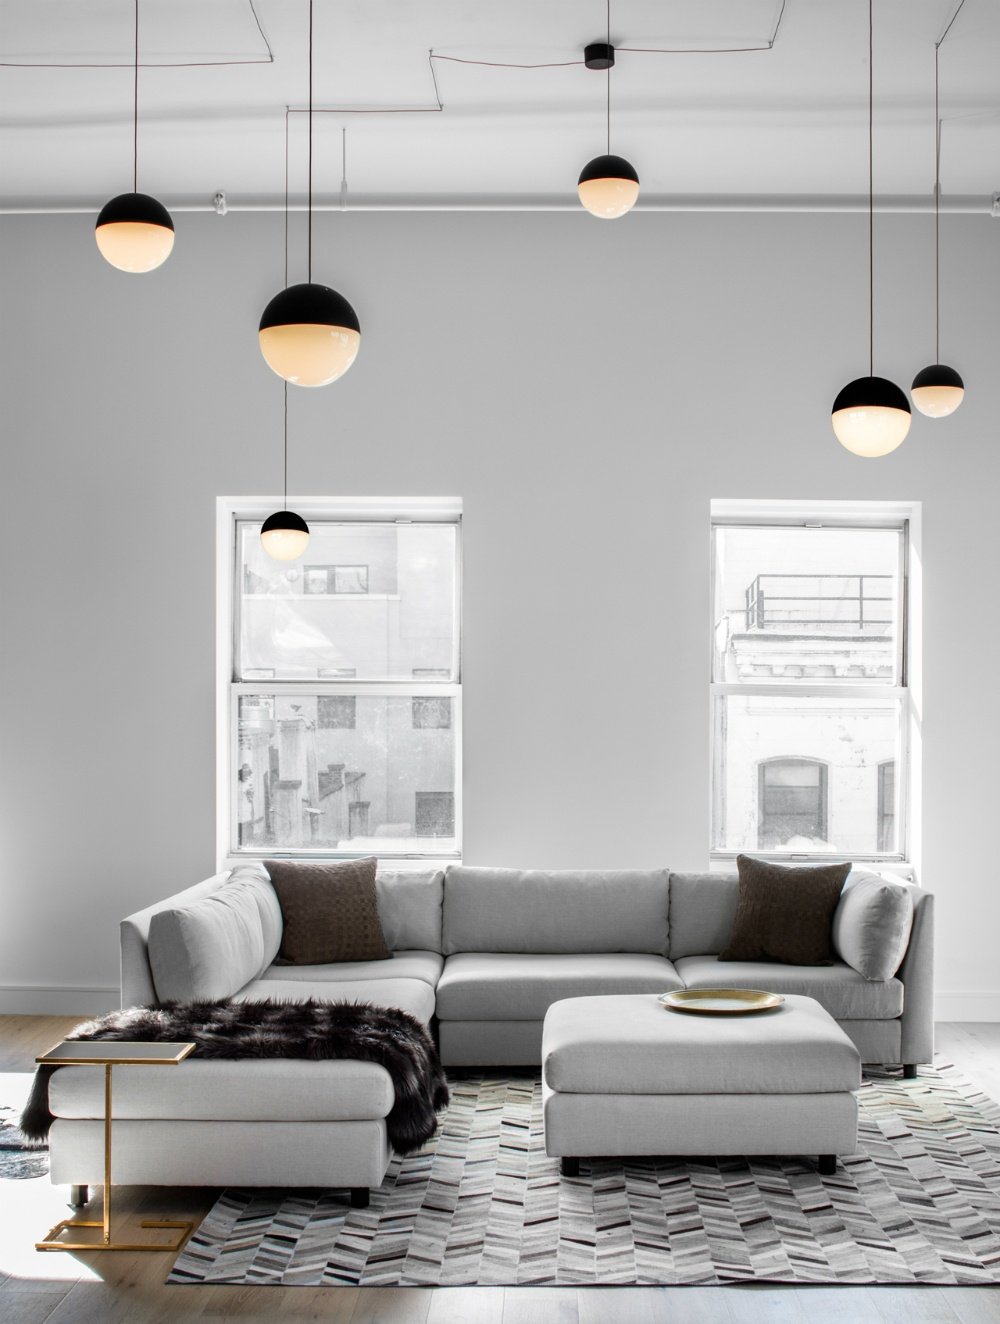 国外作品 | Decor Aid-ed: TriBeCa Loft Filled With Neutrals_The-living-area-enjoys-plenty-of-daylight-from-the-two-windows-behind-a-sectional-couch.jpg